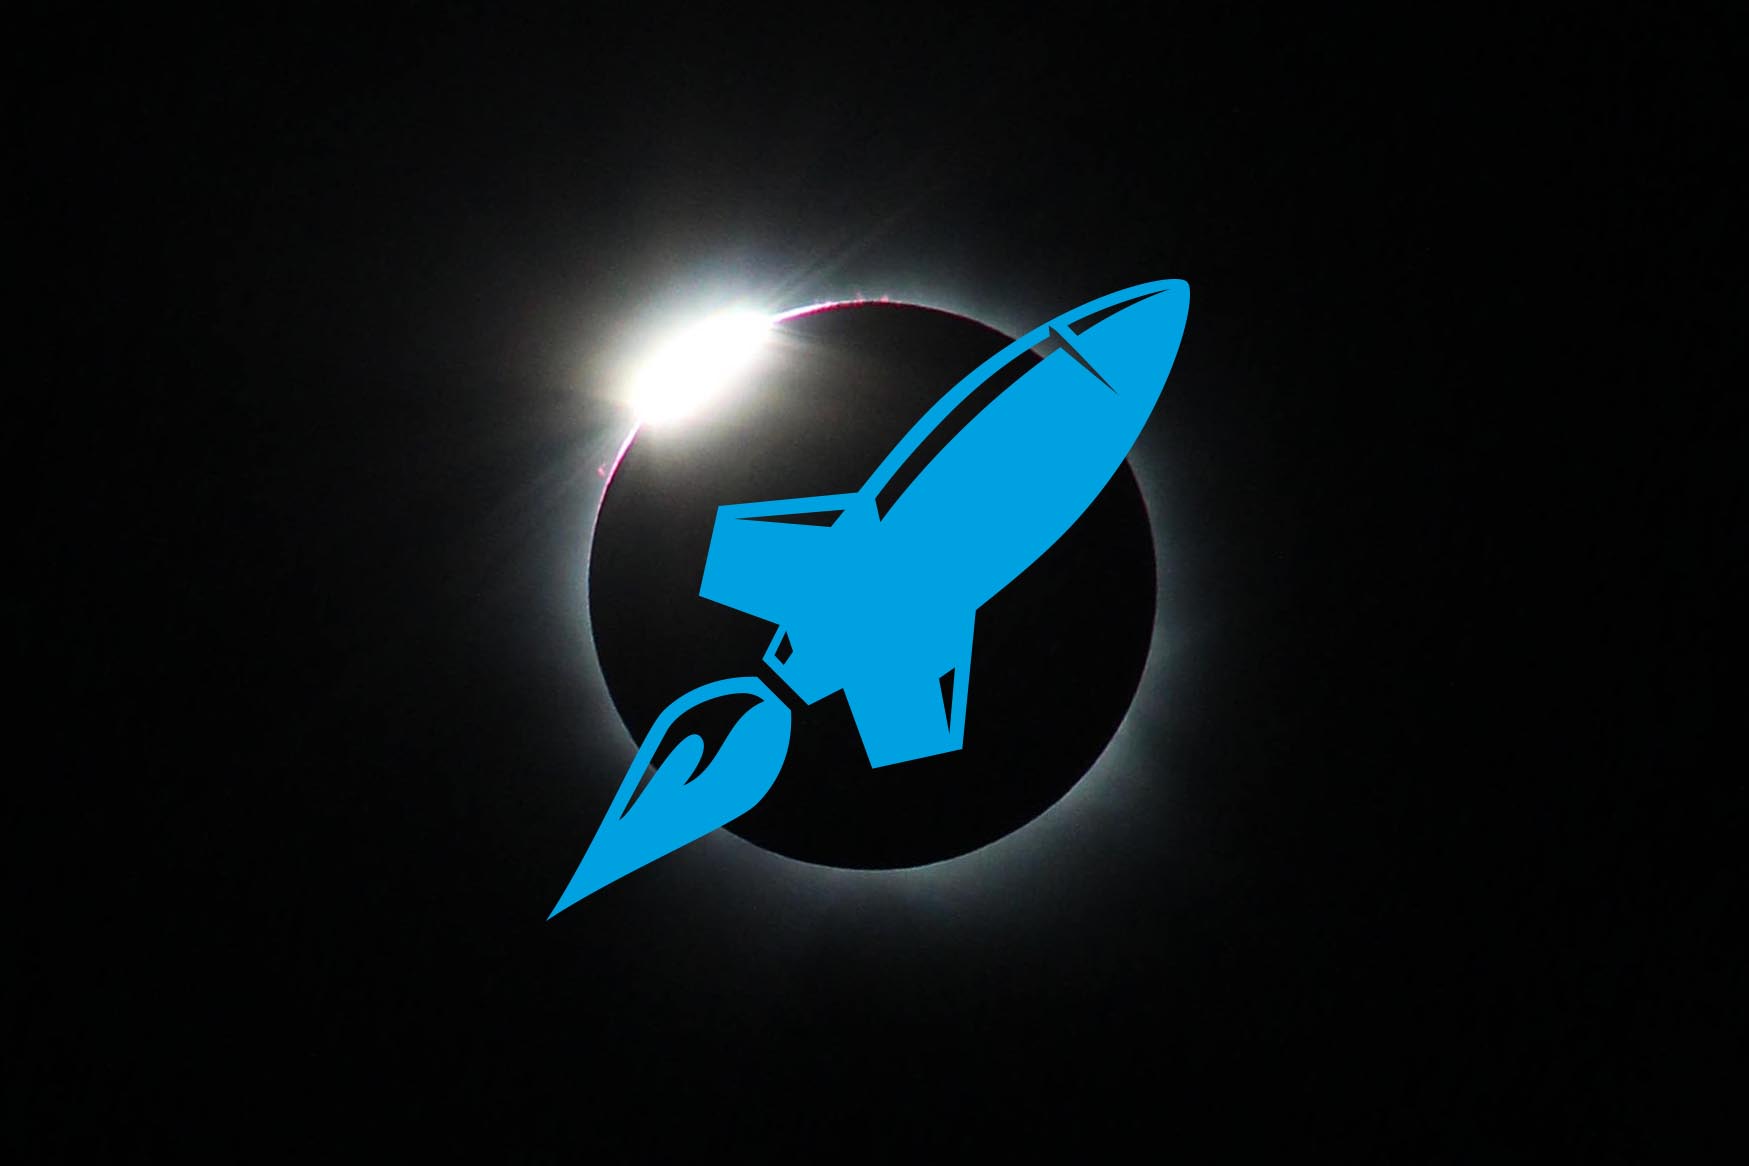 Rocketship Eclipse